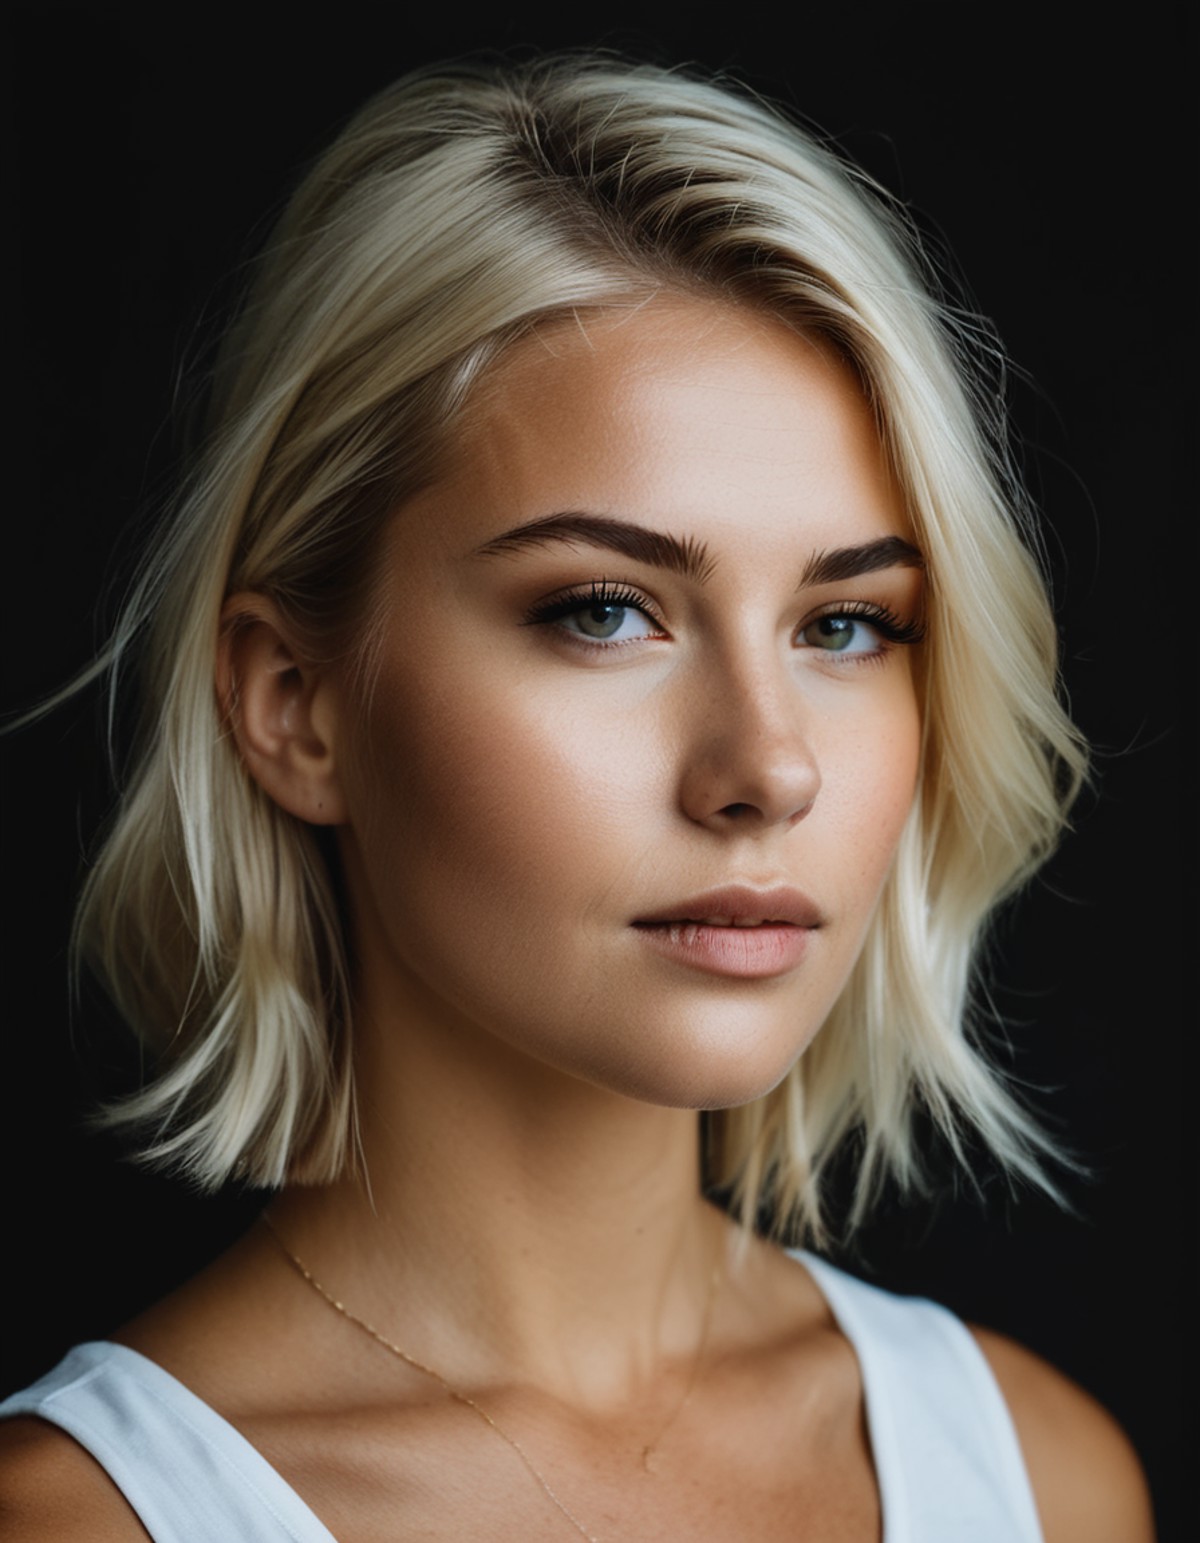 a semi-profile photo of a nordic blonde woman